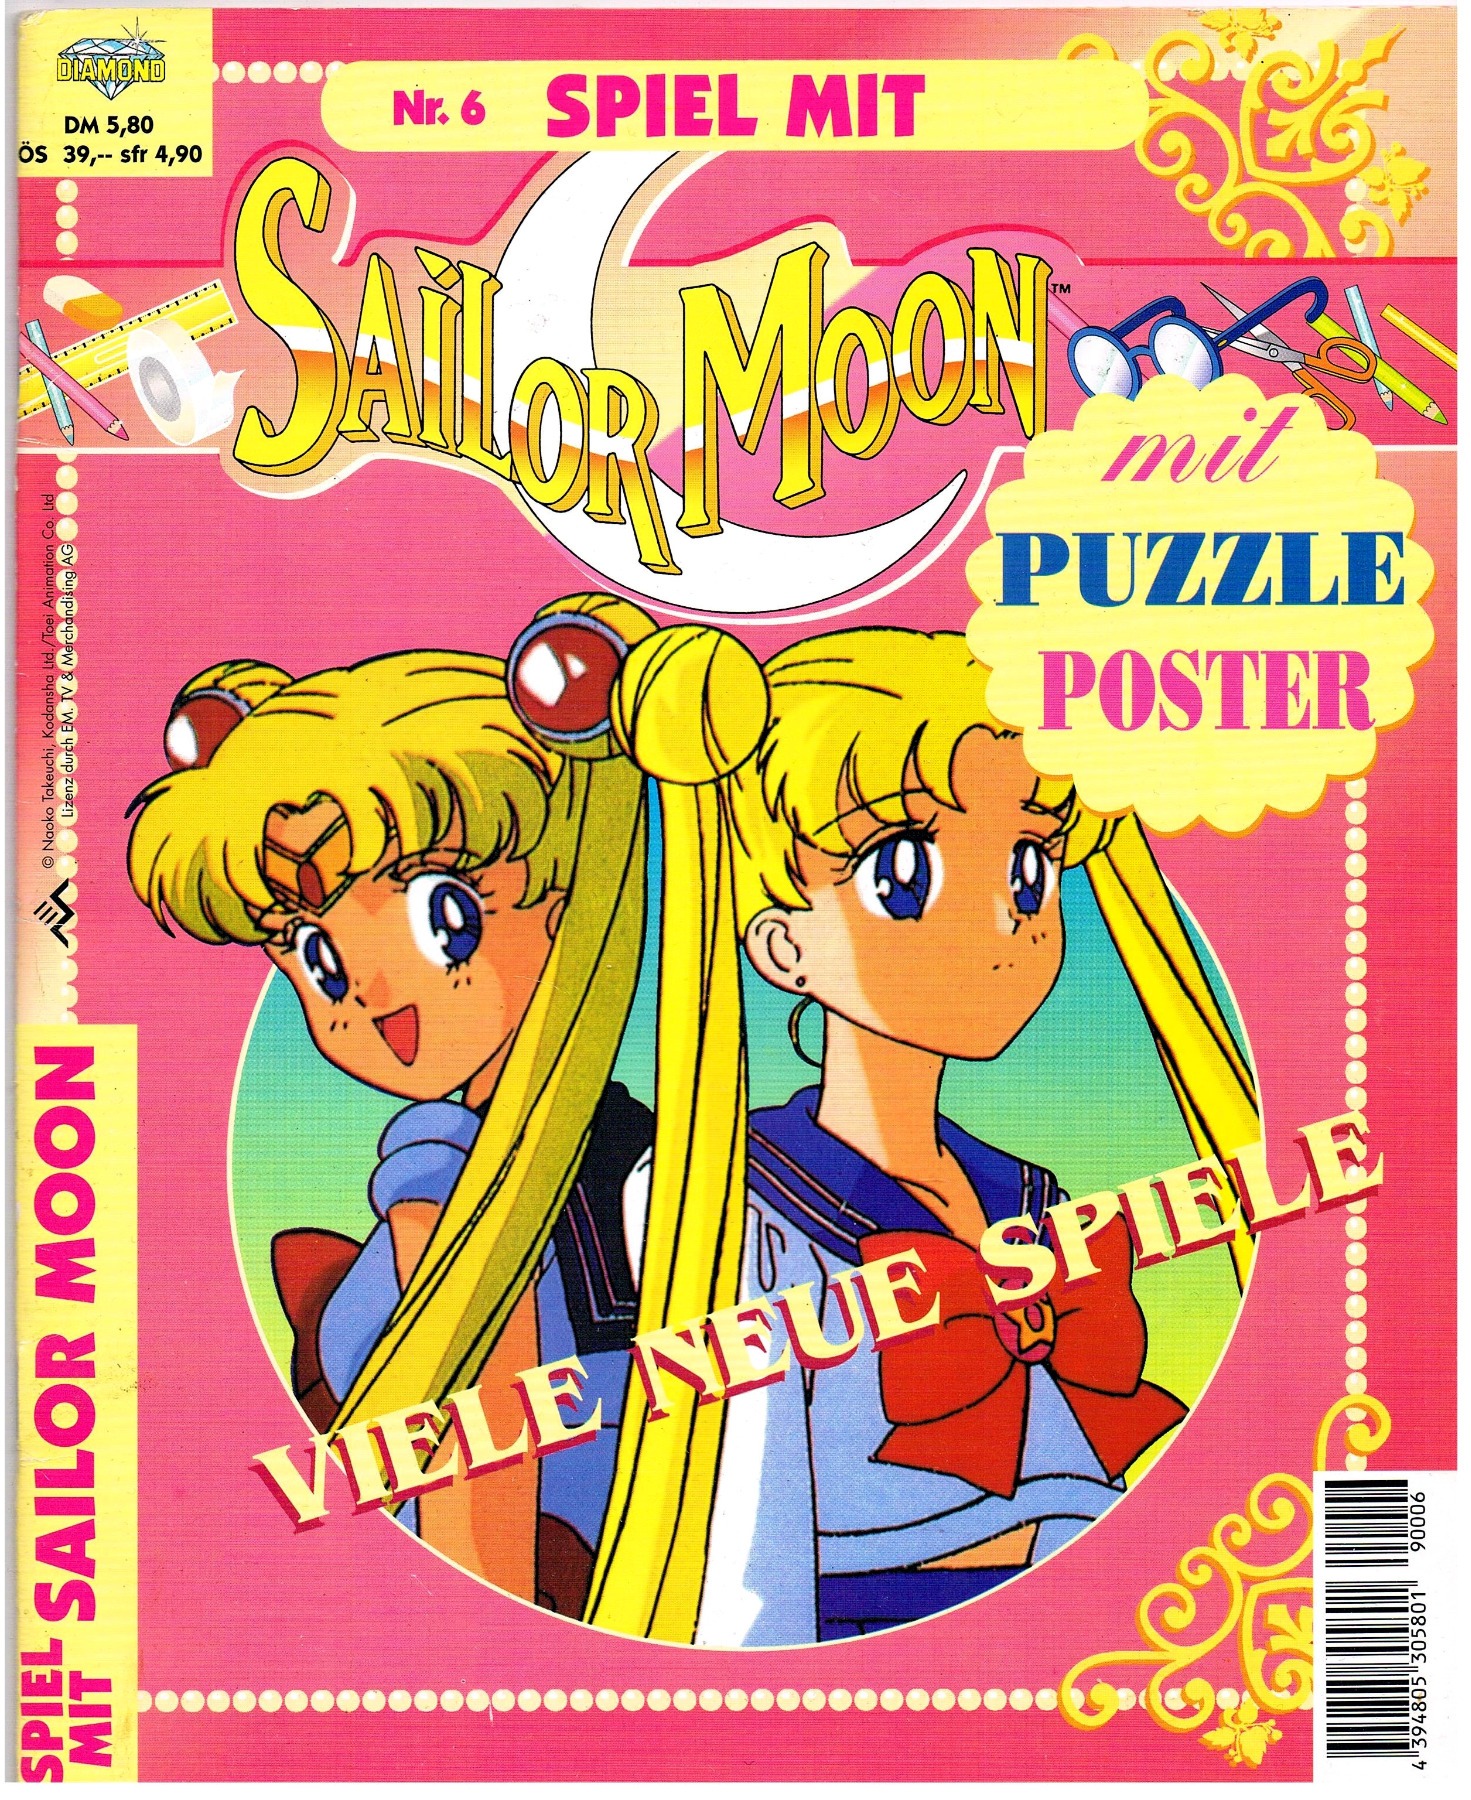 Spiel mit Sailor Moon Nr. 5